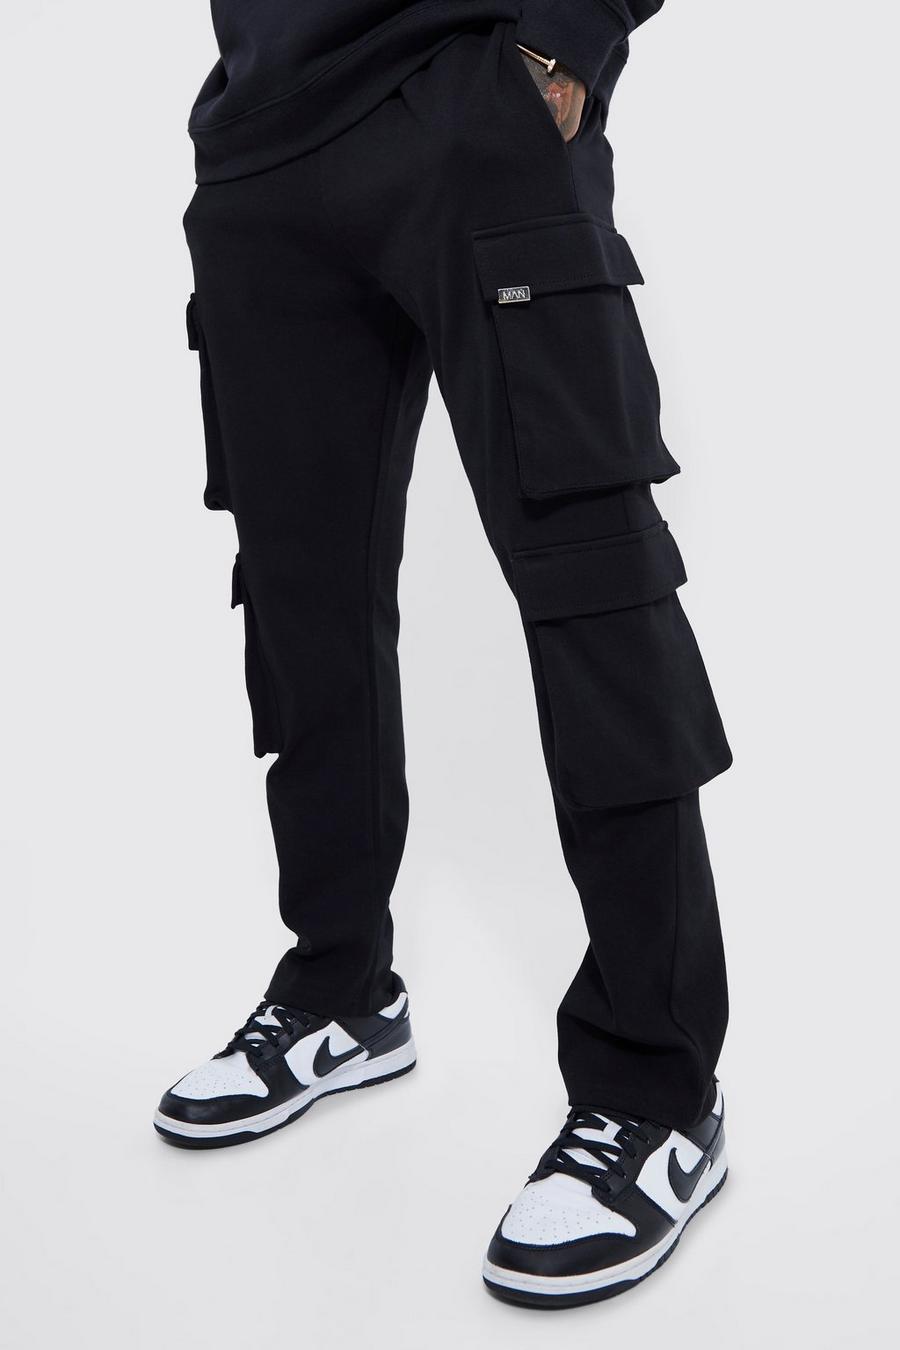 Pantalón deportivo cargo ajustado con dos bolsillos, Black negro